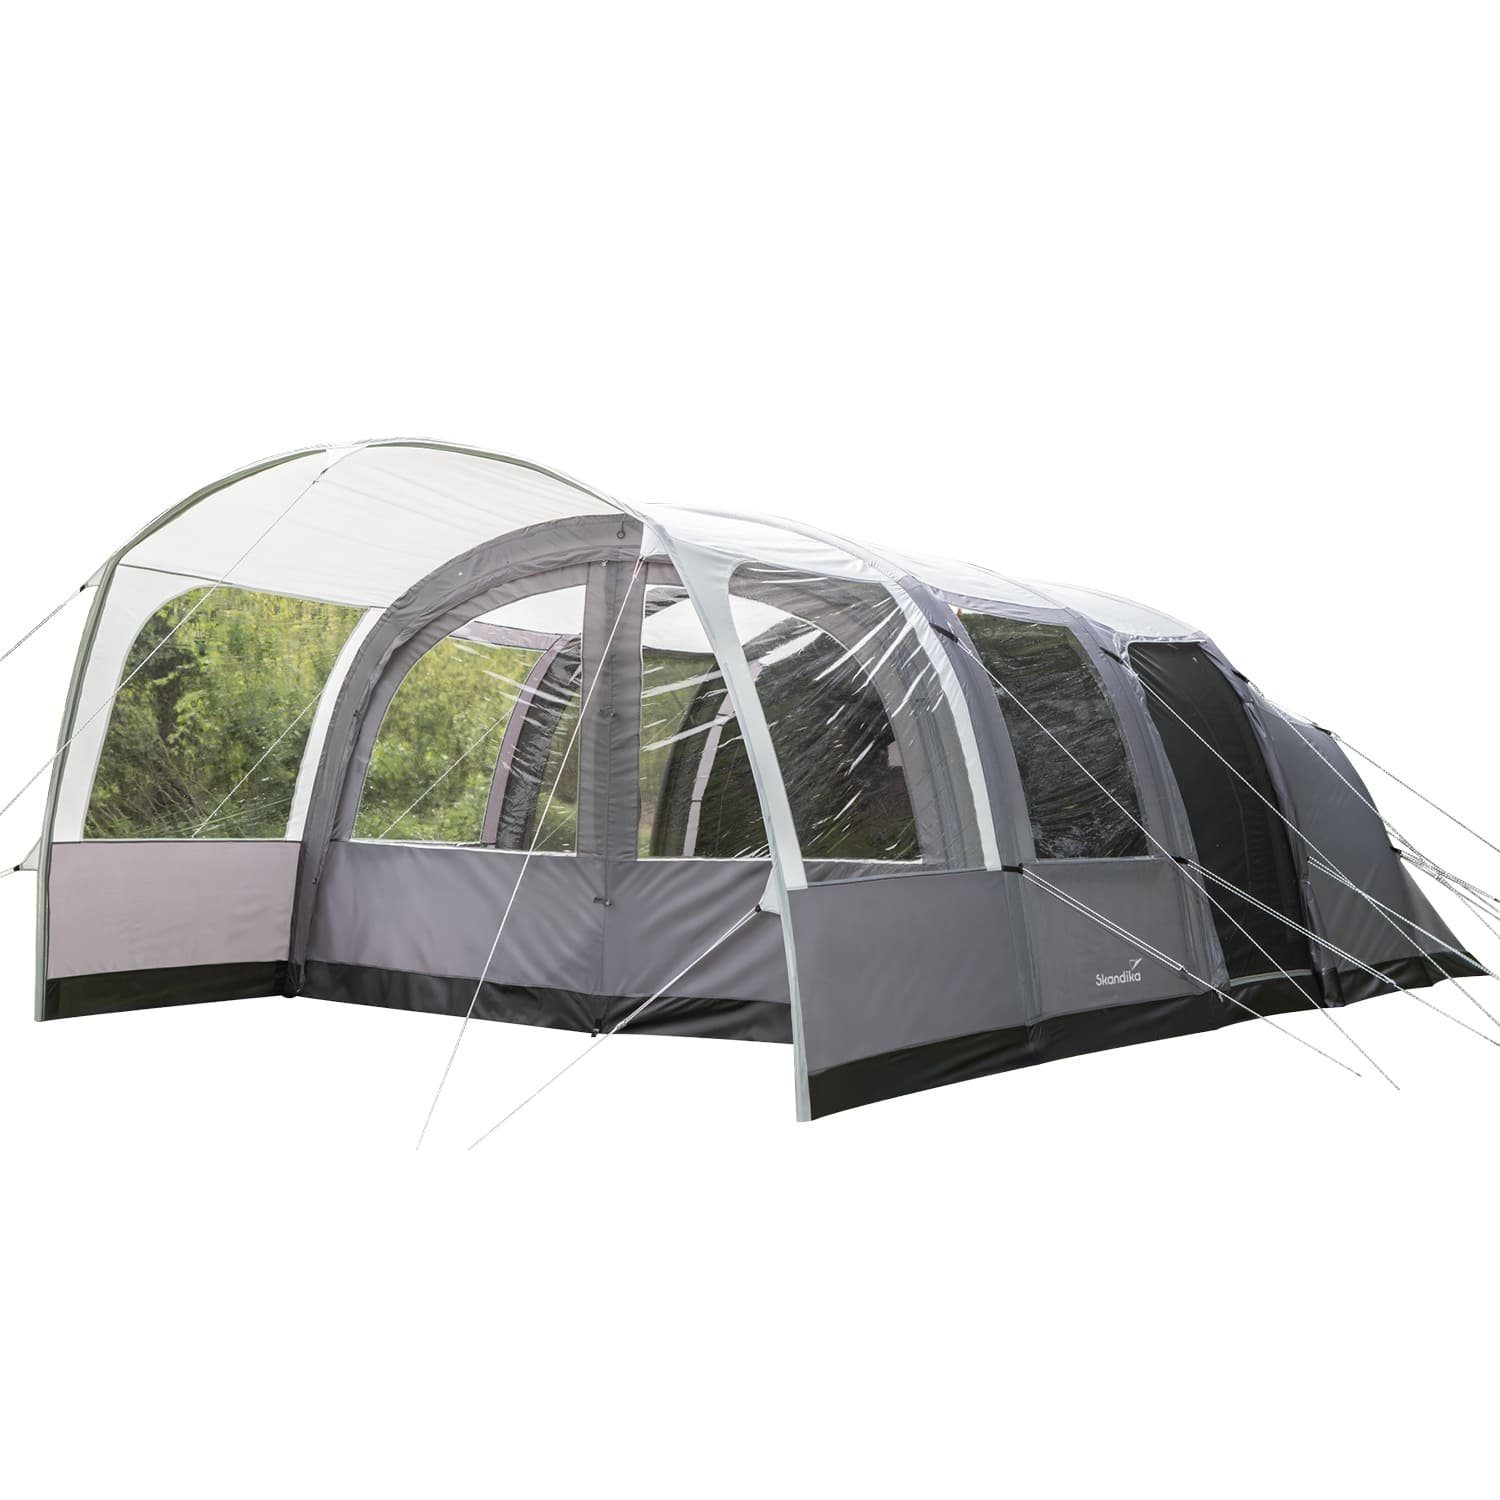 Skandika Tunnelzelt Timola 6 Air Protect, 2 Schlafkabinen, Personen: 6, Aufblasbares Zelte für 6 Mann, Wasserdicht - 5000 mm Wassersäule